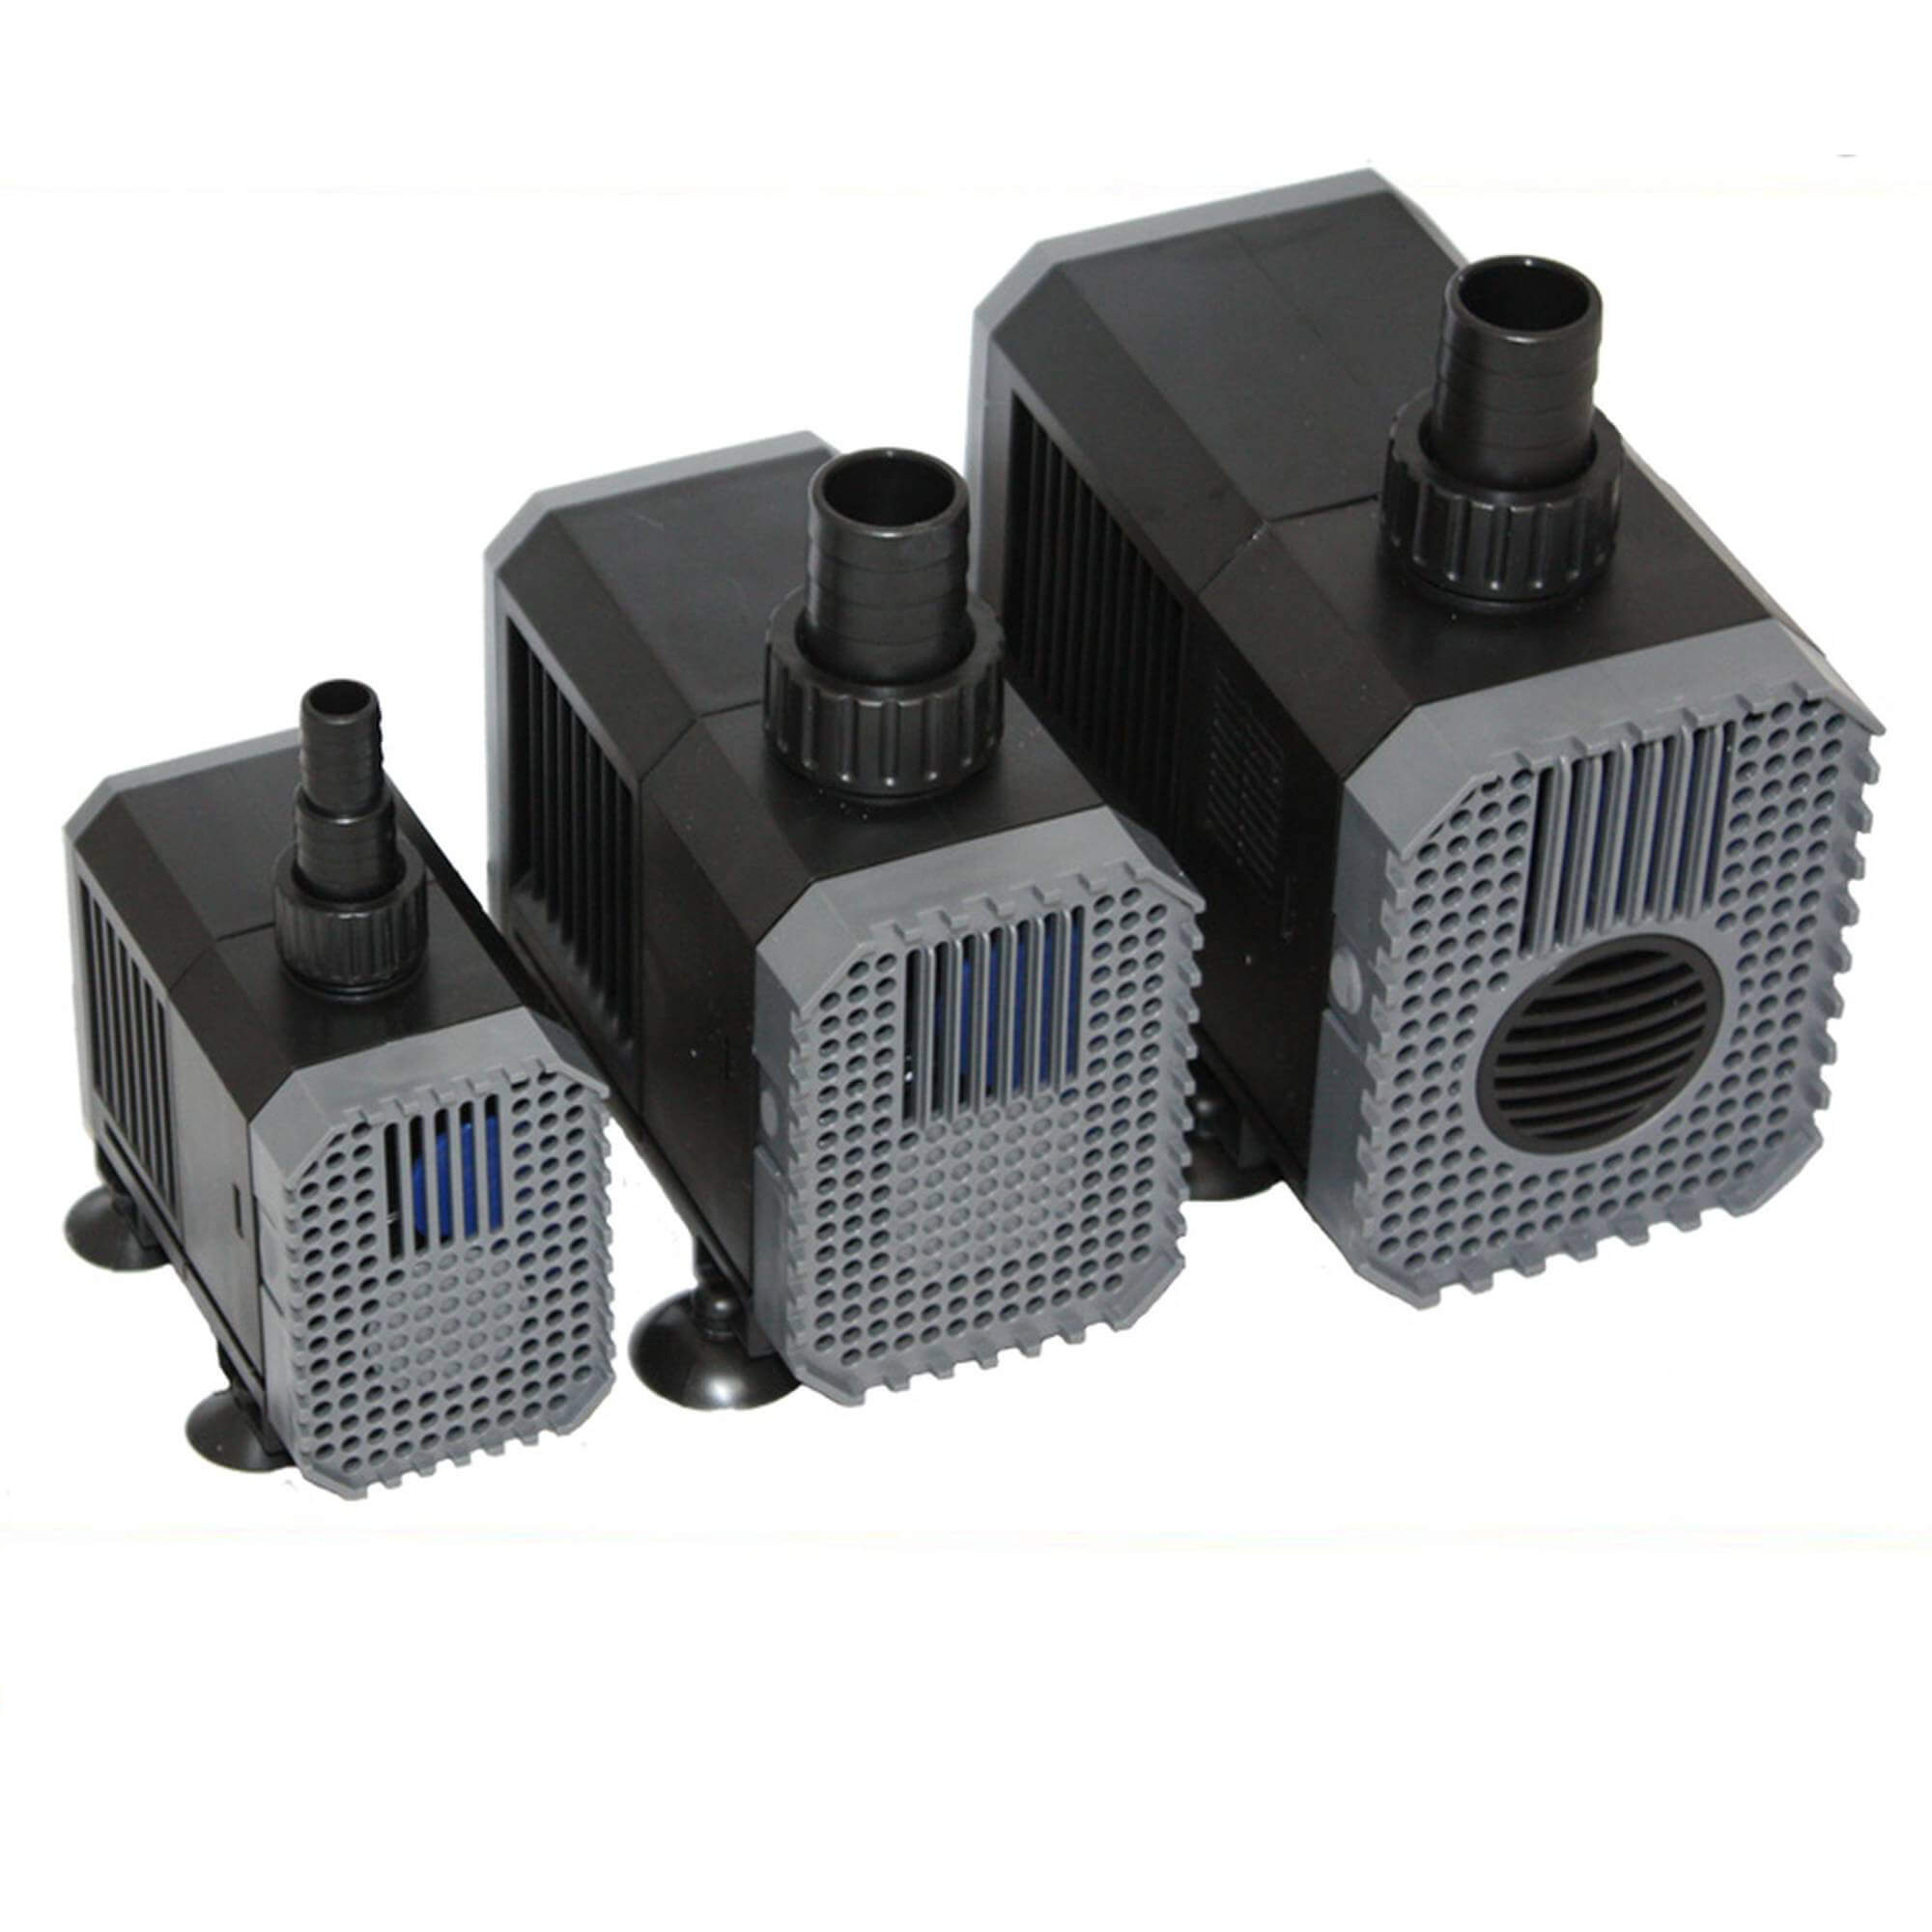 SunSun CHJ-500 Eco Pompa filtro acquario 500l/h 7W